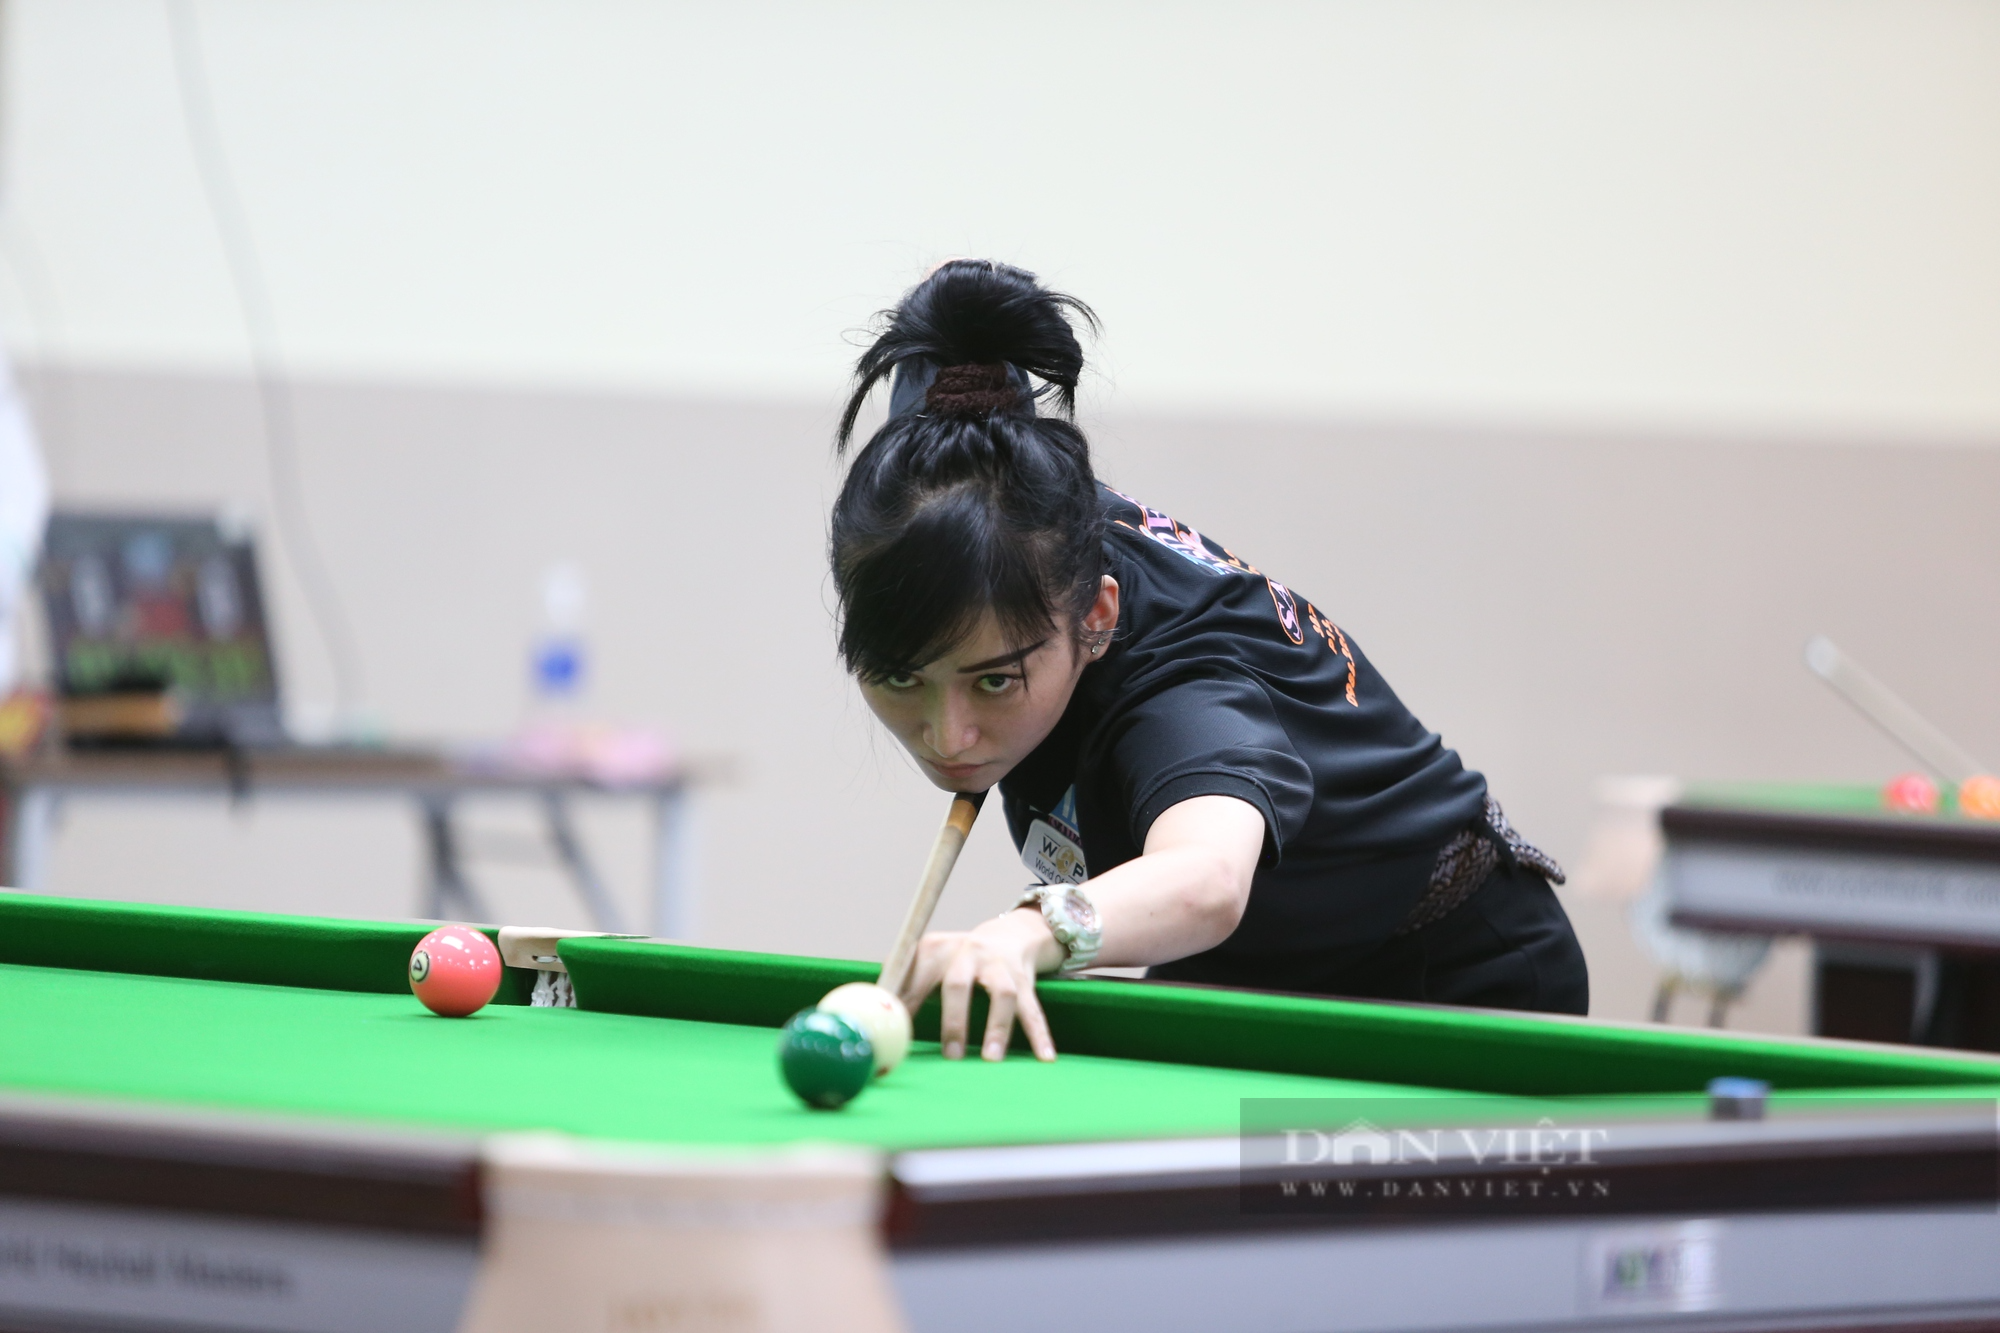 Sheron Li - hotgirl billiards Trung Quốc làm mê mẩn các cơ thủ Sài thành - Ảnh 10.